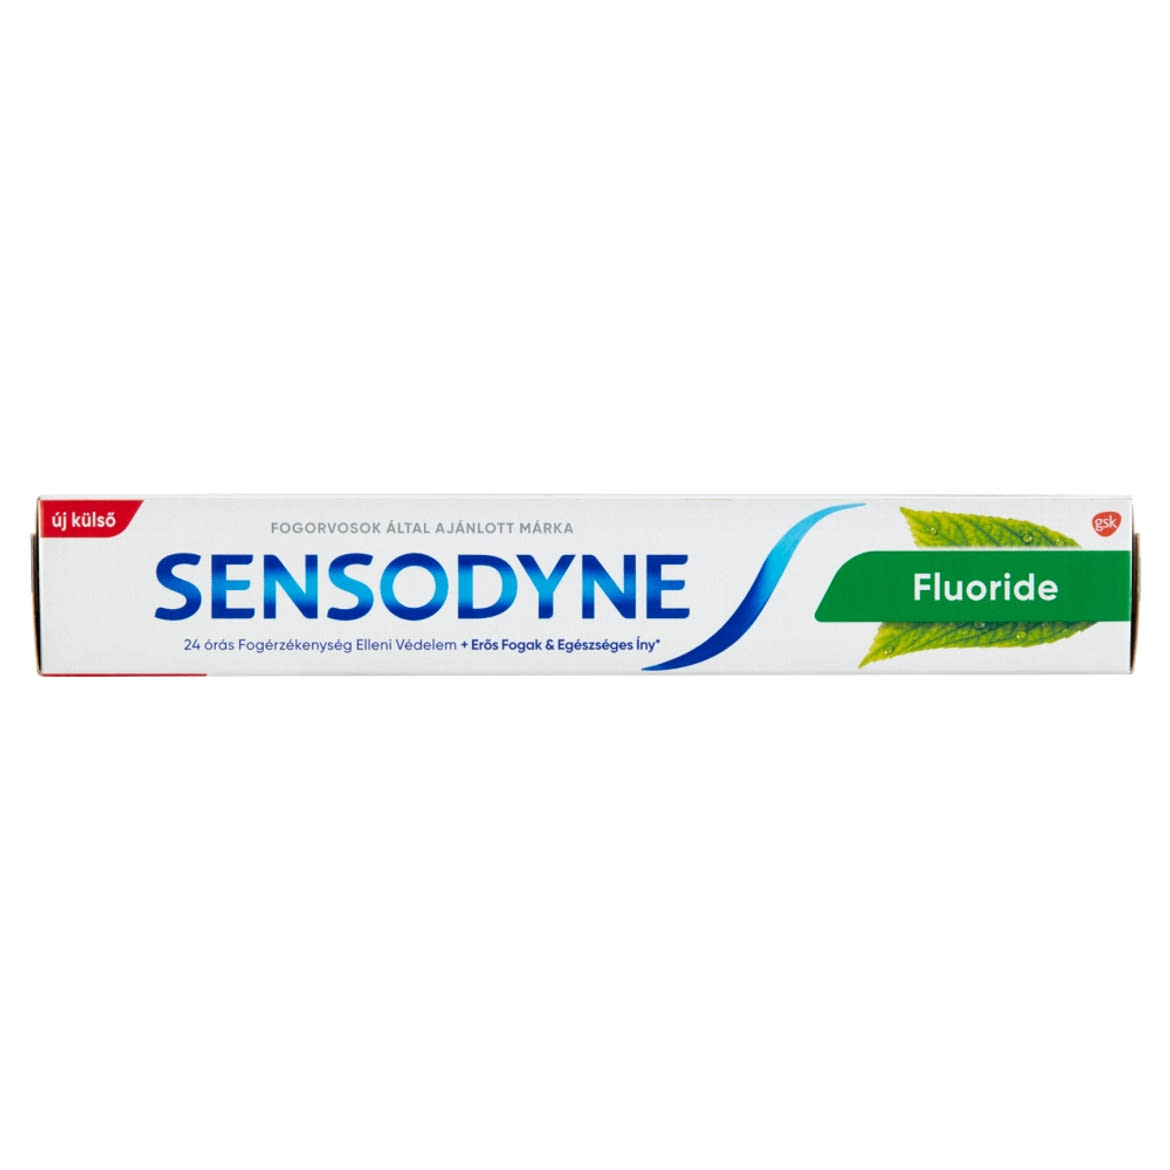 Sensodyne fluoridos fogkrém